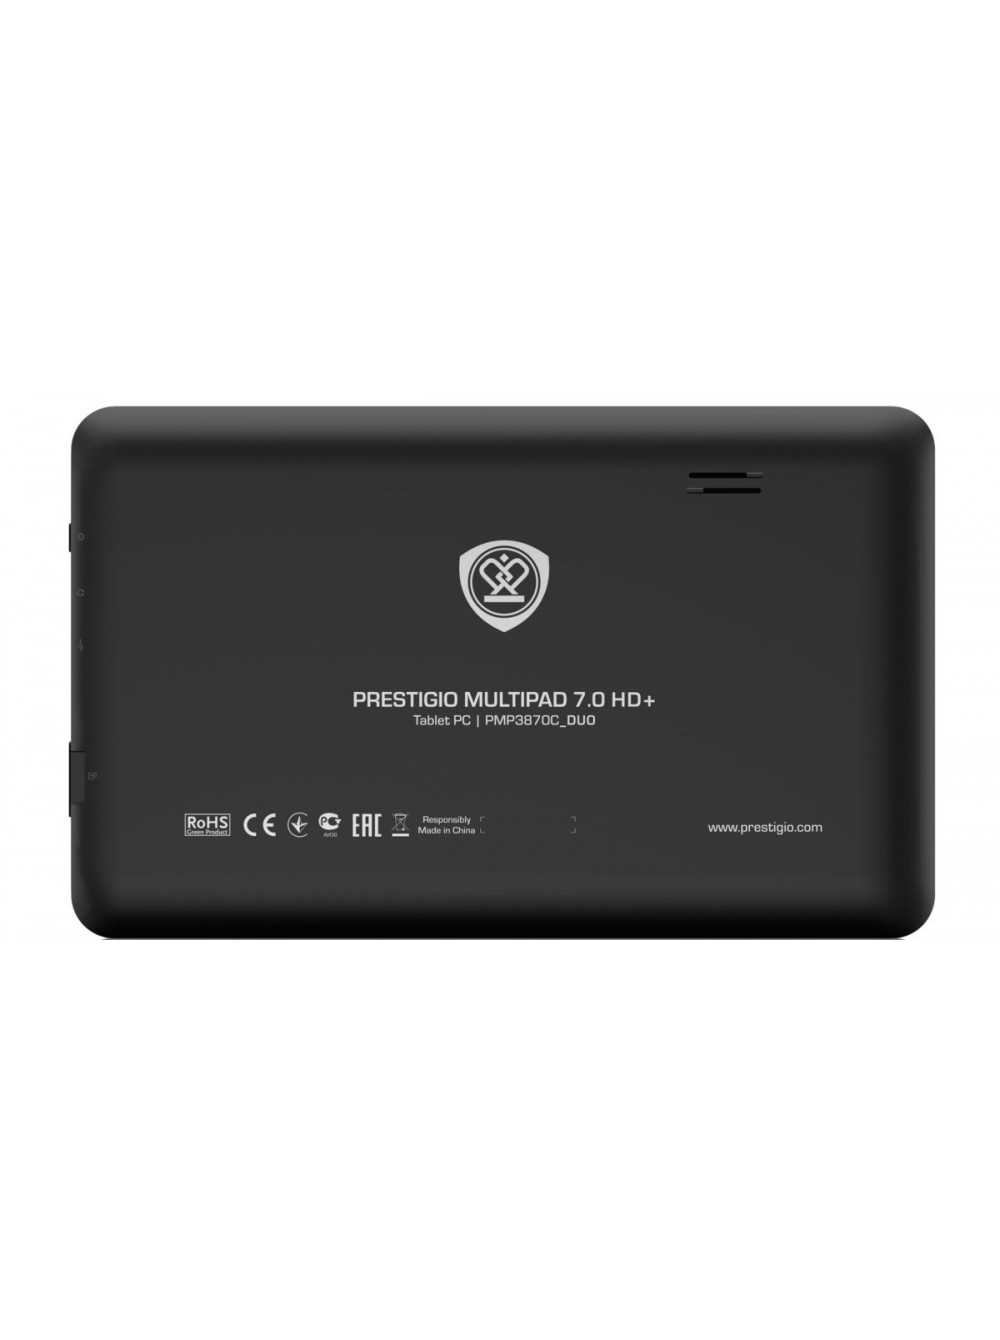 Планшет Prestigio MultiPad 70 HD - подробные характеристики обзоры видео фото Цены в интернет-магазинах где можно купить планшет Prestigio MultiPad 70 HD